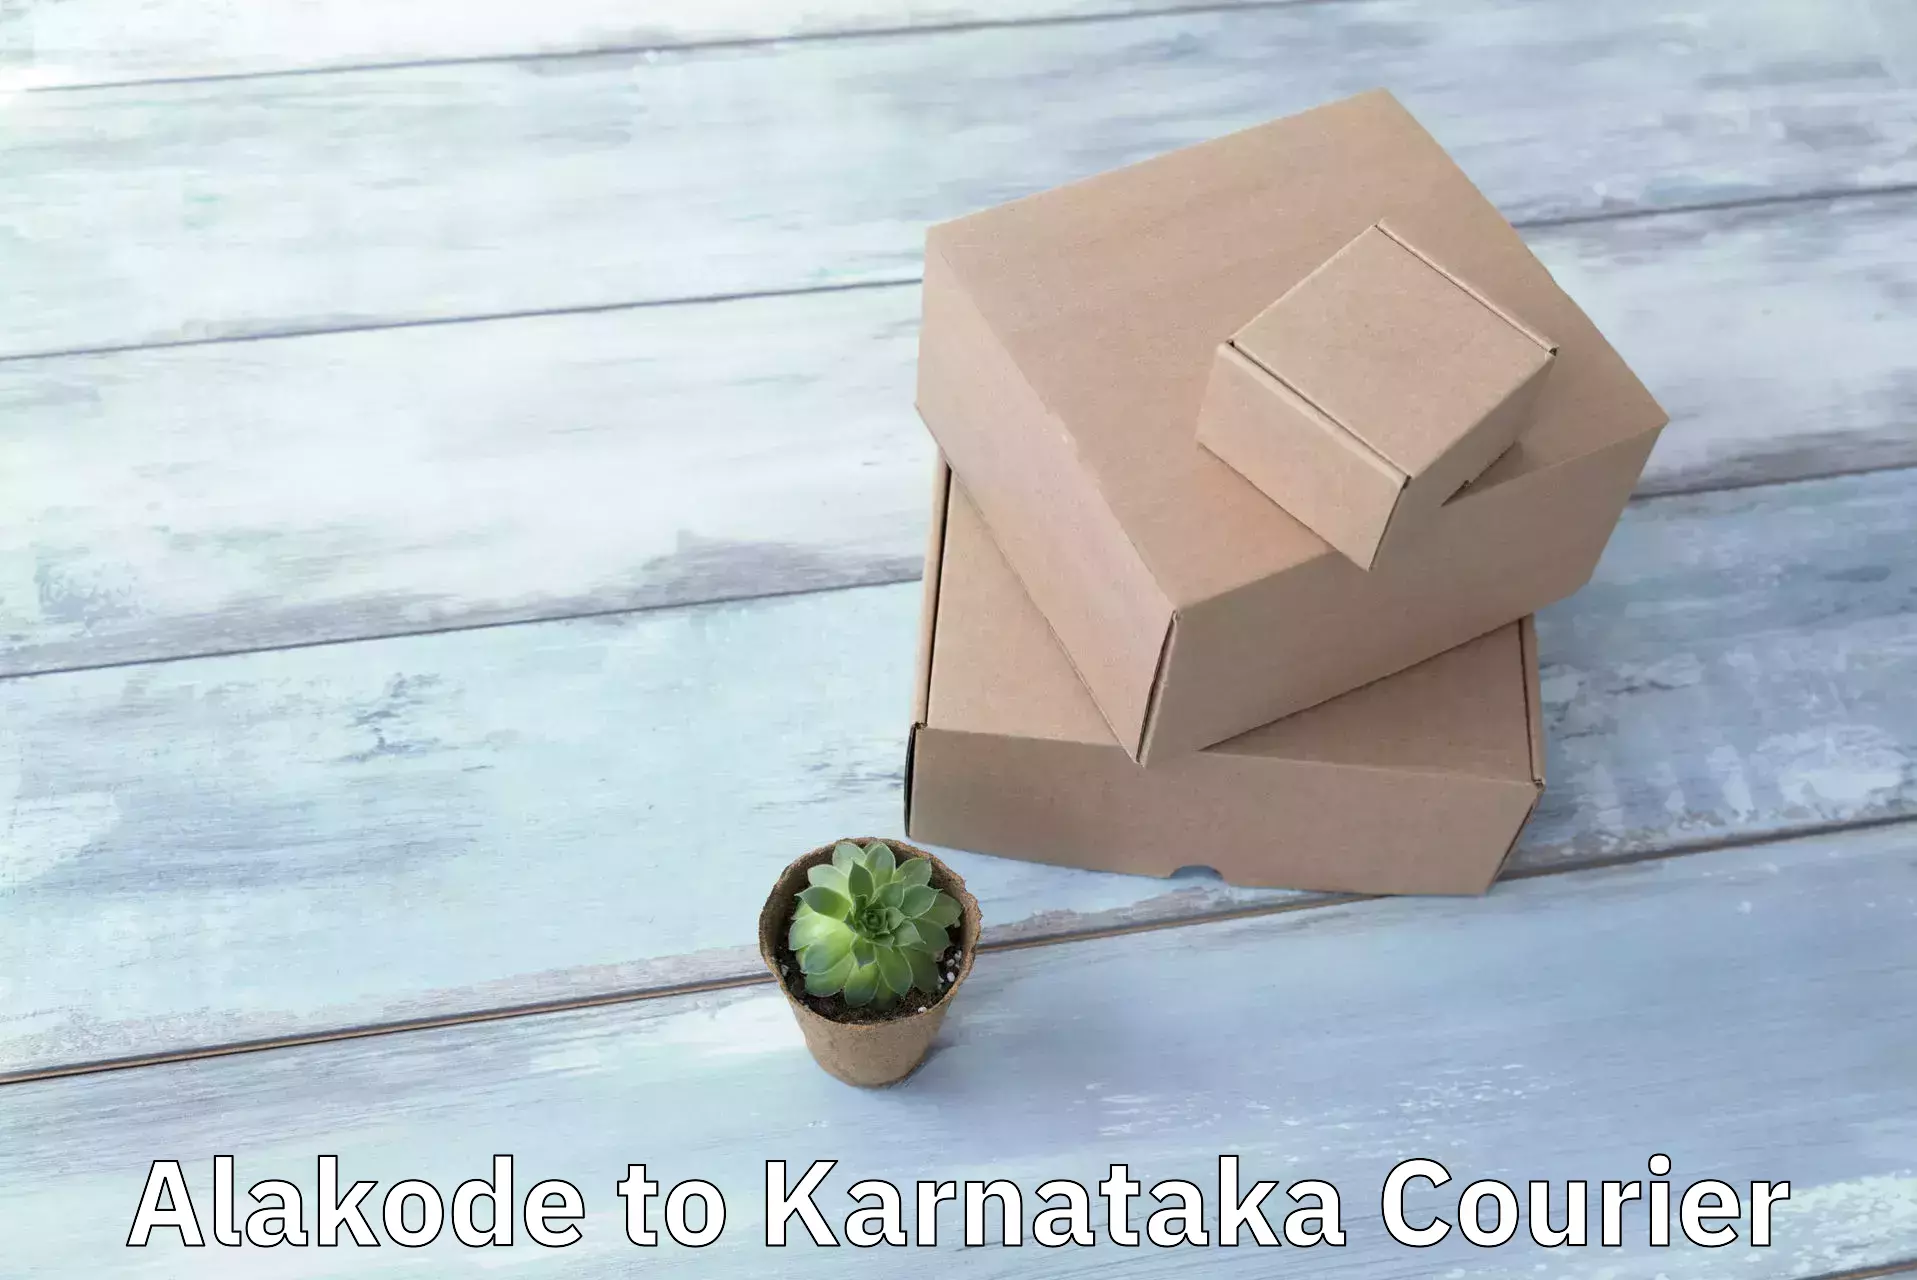 Express courier capabilities Alakode to Karkala